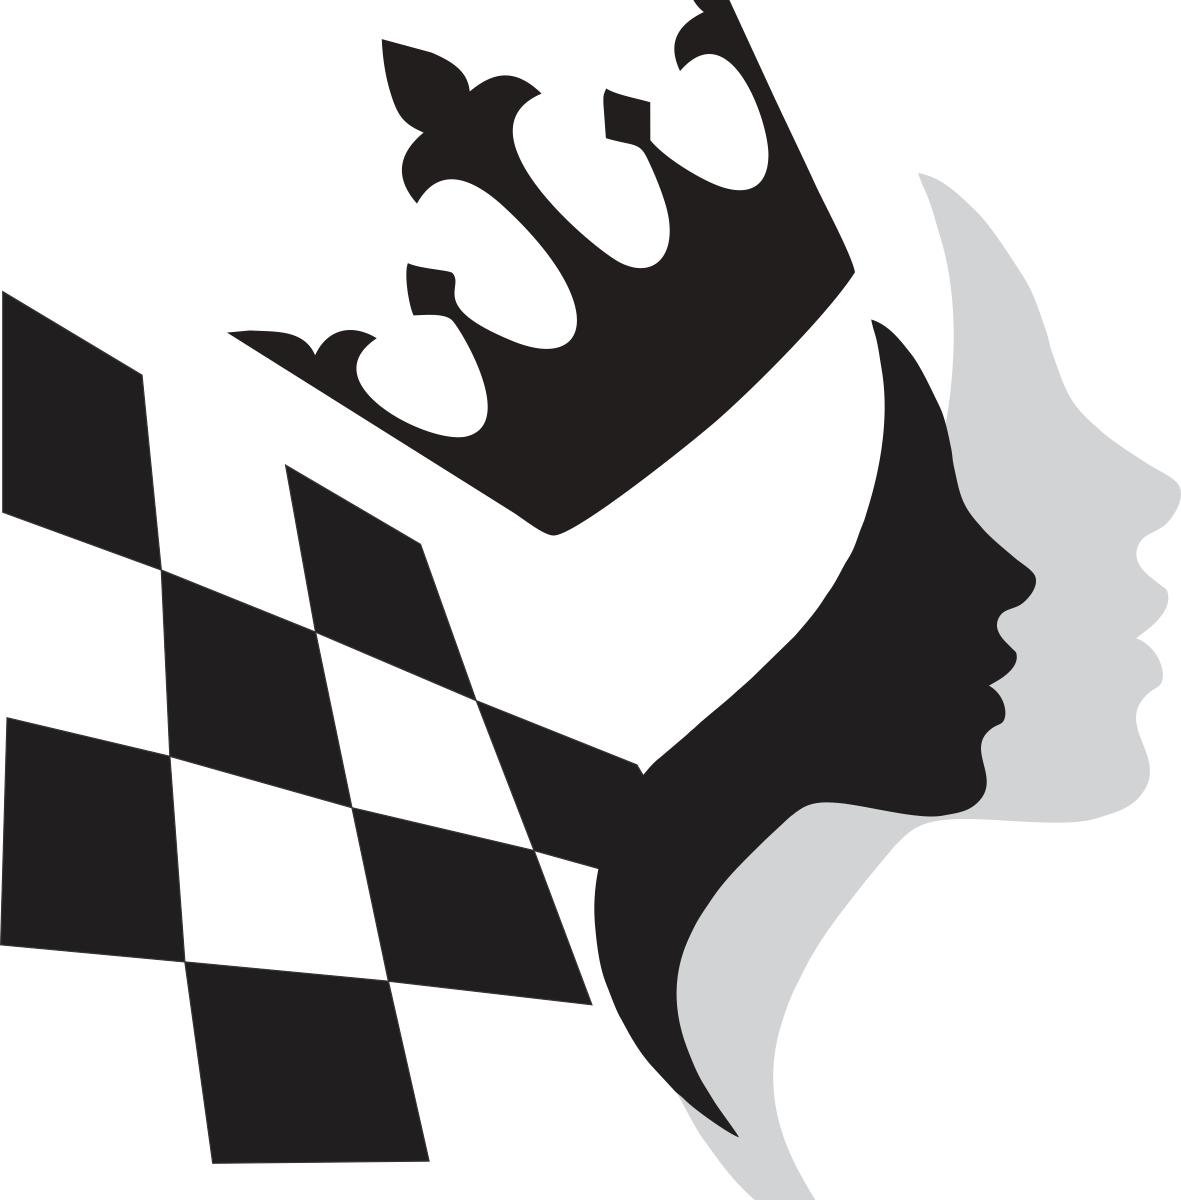 Девушка в образе шахматной фигуры - королевы